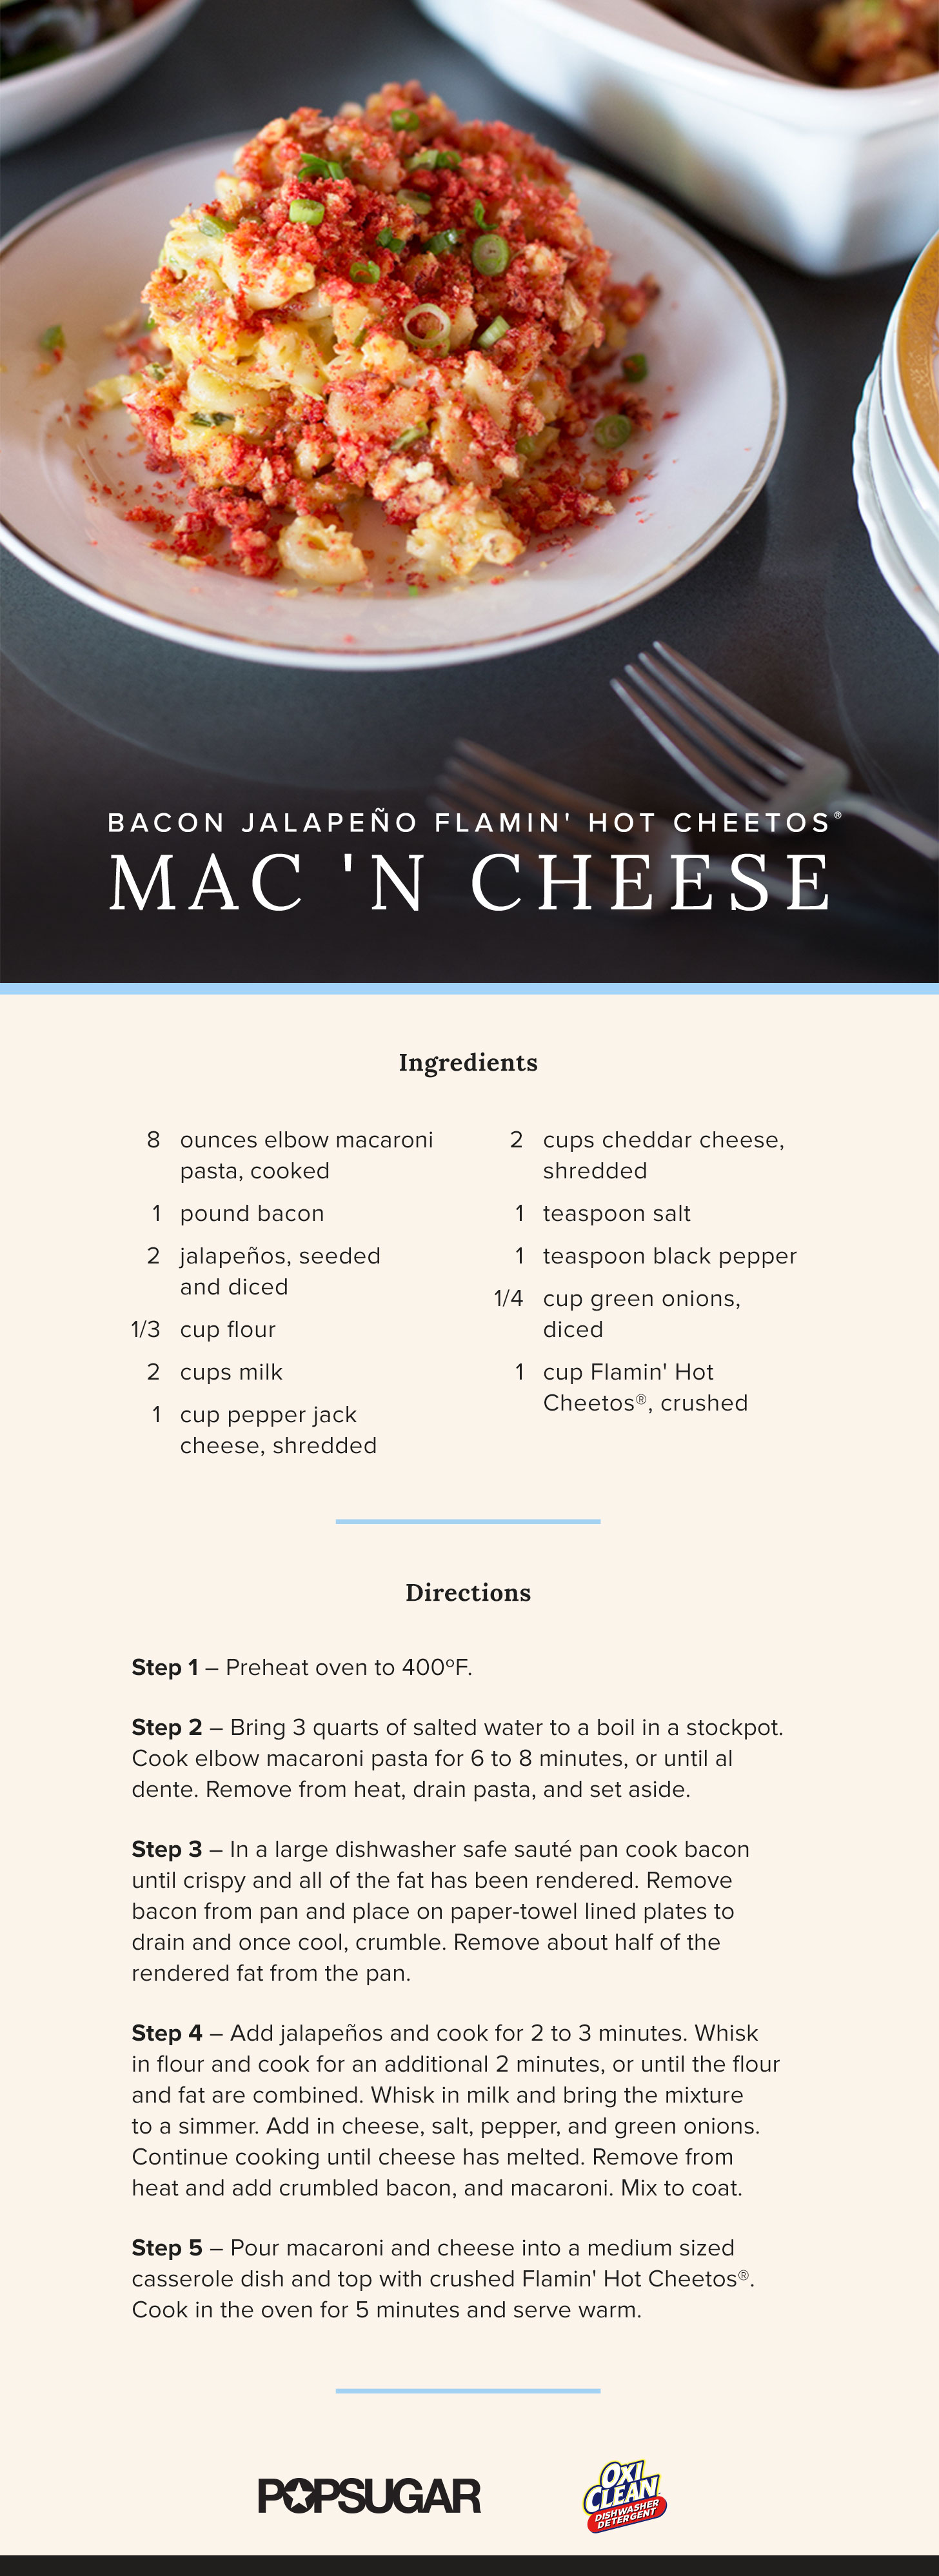 CHEETOS® Mac 'n Cheese Cheesy Bacon Cup